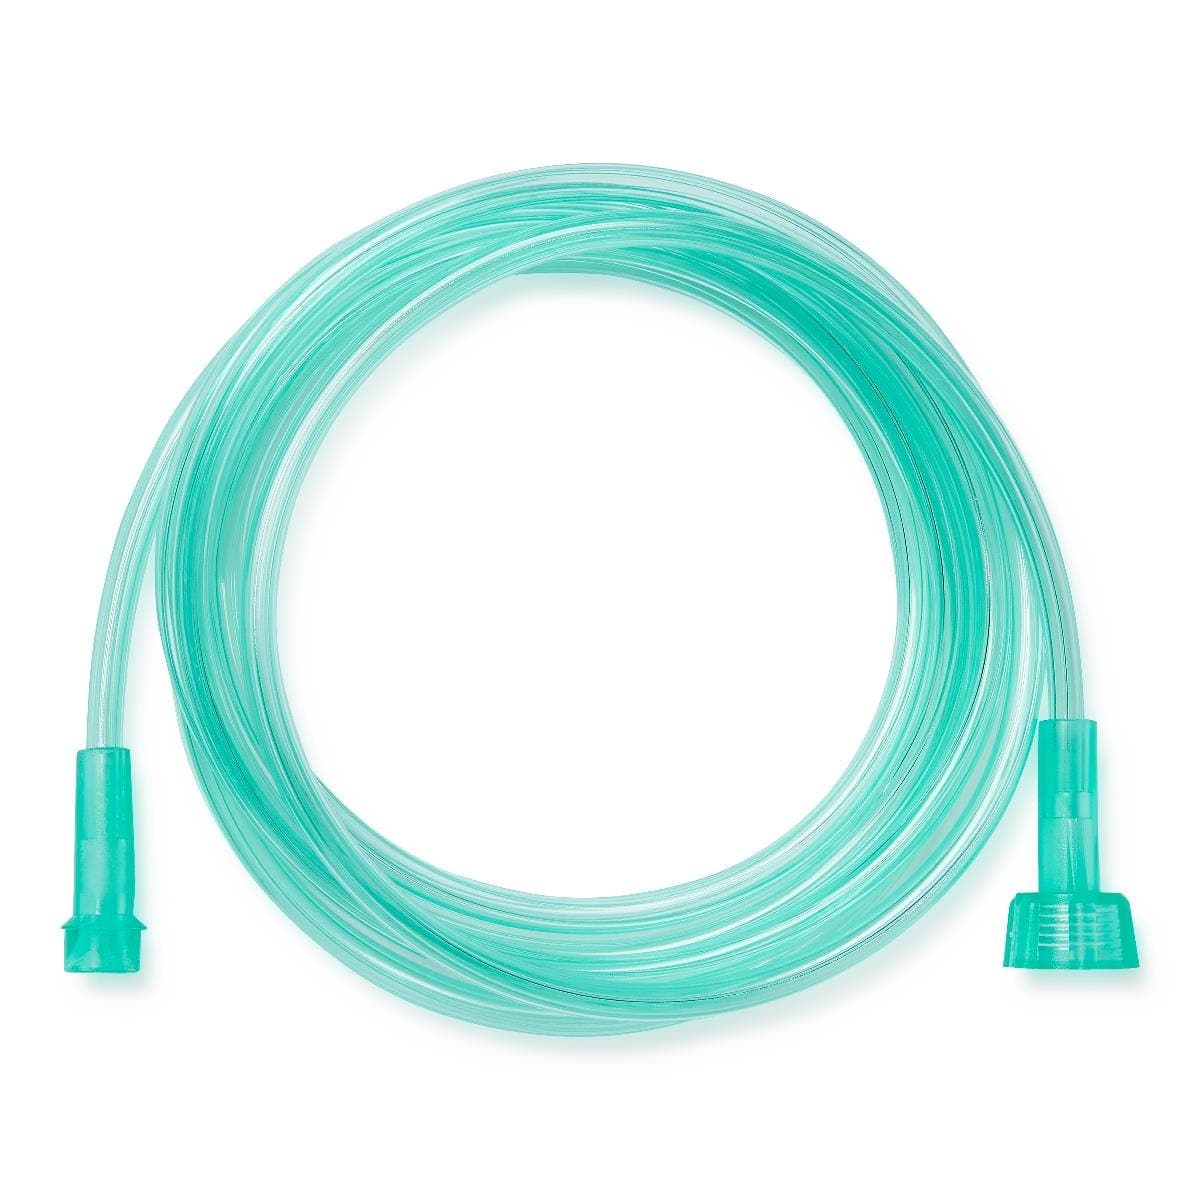 Medline 50' / Single Item Medline Green Oxygen Tubing with Standard Connector